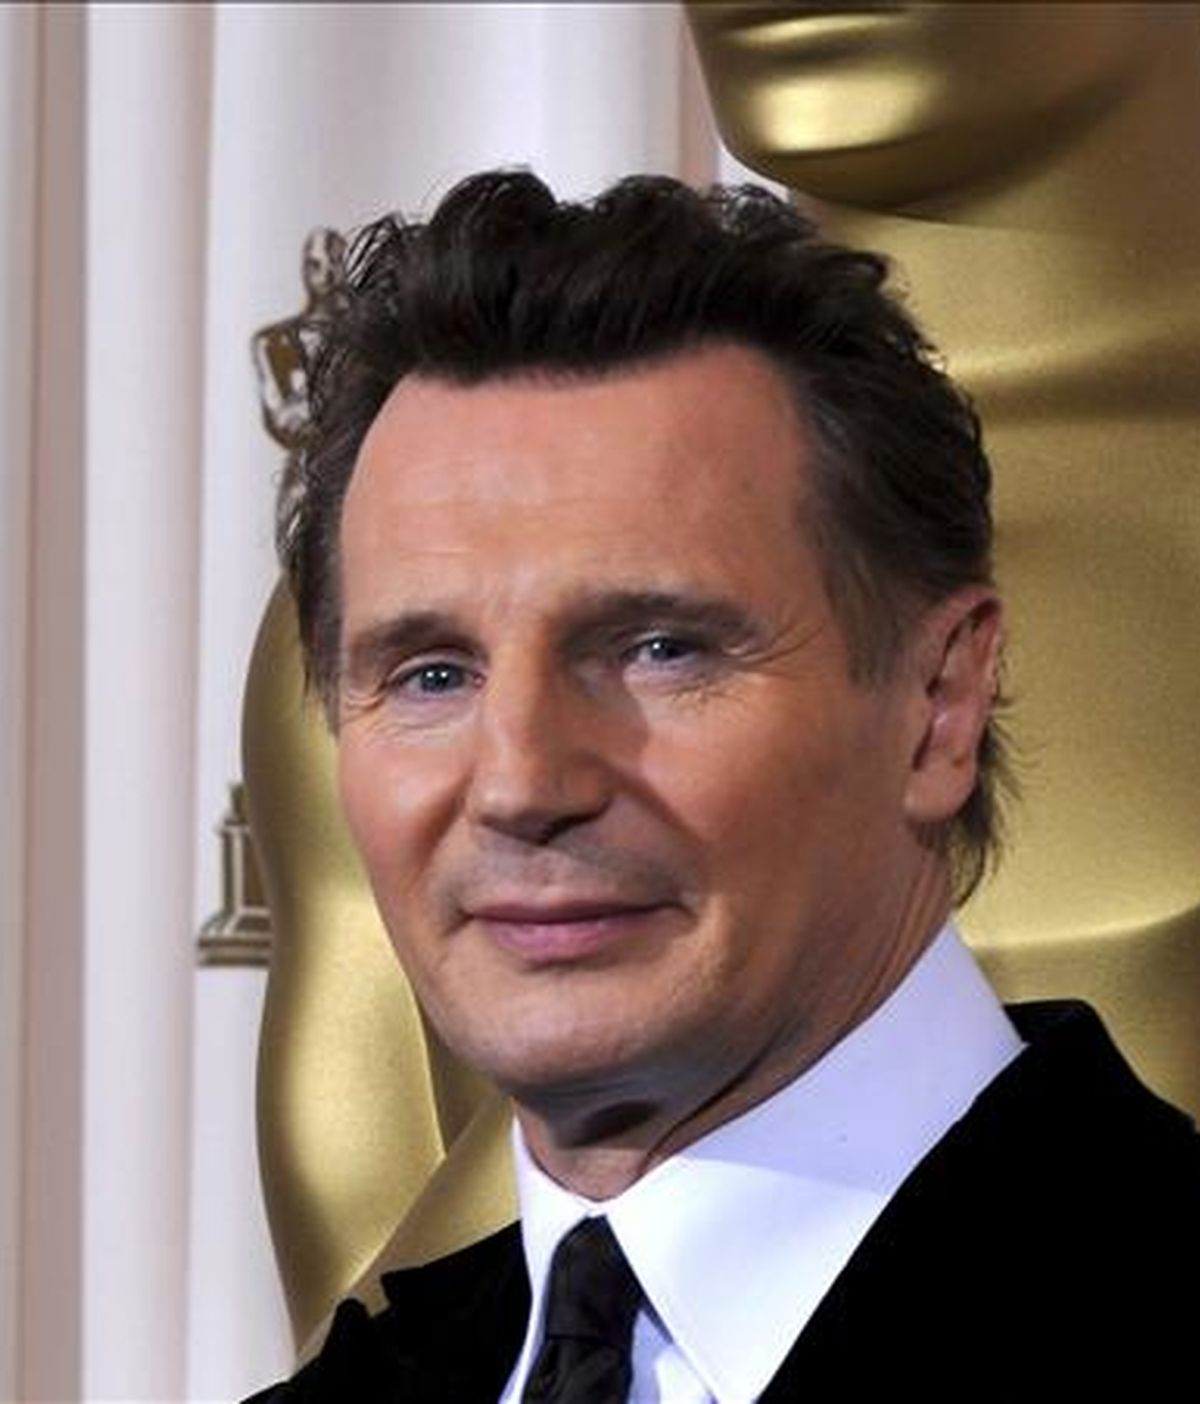 El actor irlandés Liam Neeson posa para los fotógrafos en la 81º edición de los Premios de la Academia celebrados en el Teatro Kodak de Hollywood (California, Estados Unidos), el pasado 22 de febrero. EFE/Archivo